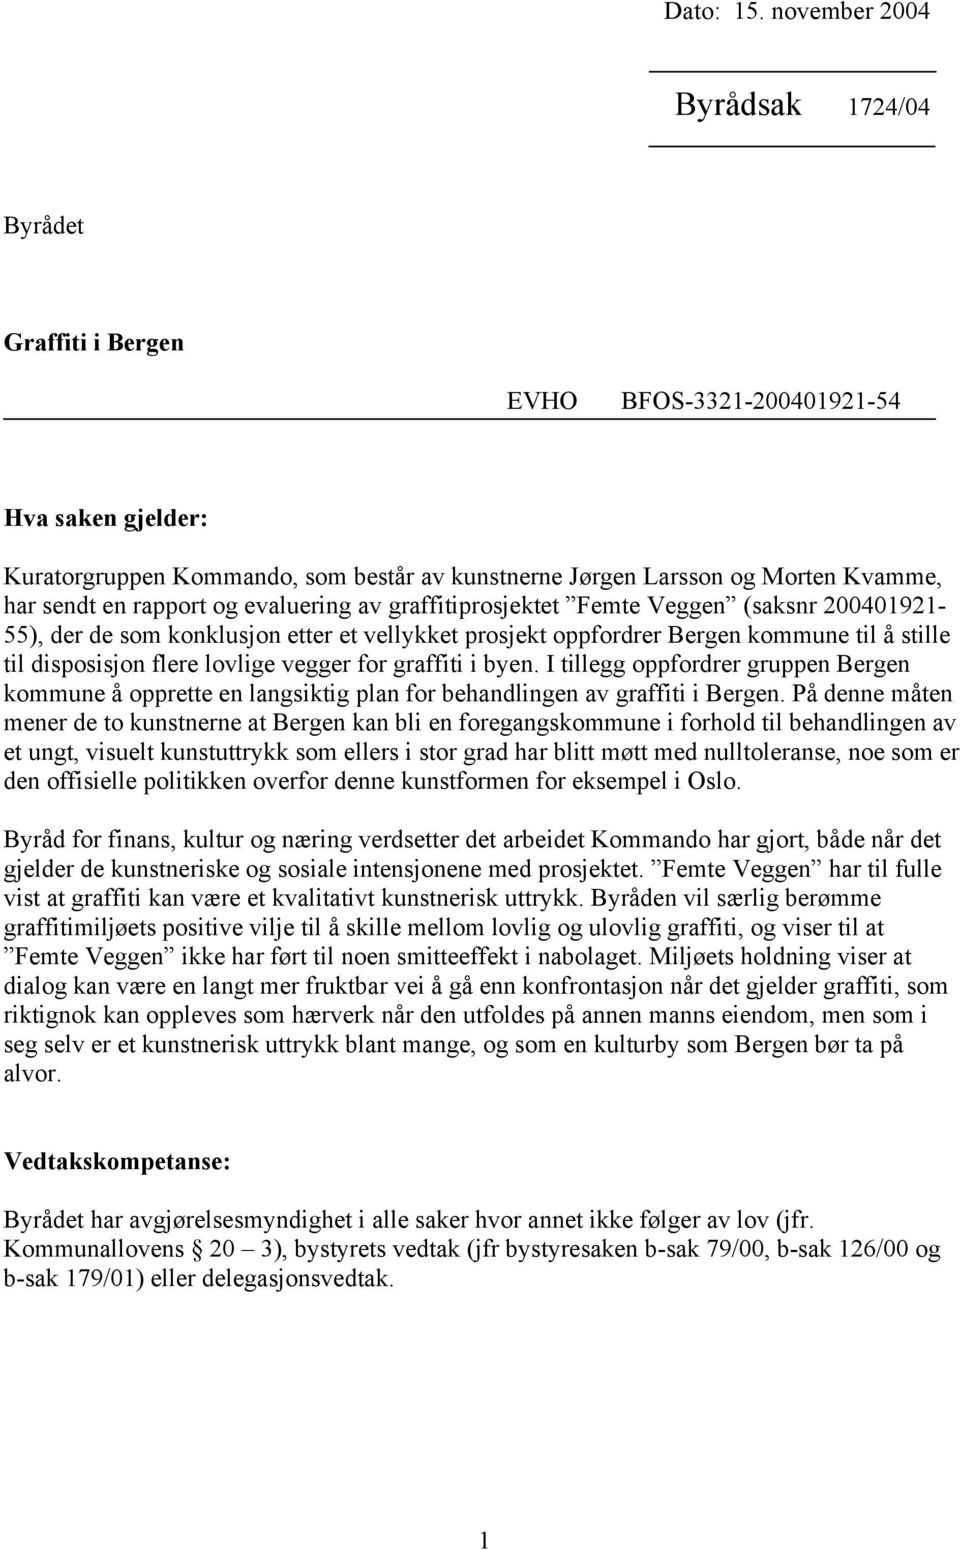 rapport og evaluering av graffitiprosjektet Femte Veggen (saksnr 200401921-55), der de som konklusjon etter et vellykket prosjekt oppfordrer Bergen kommune til å stille til disposisjon flere lovlige